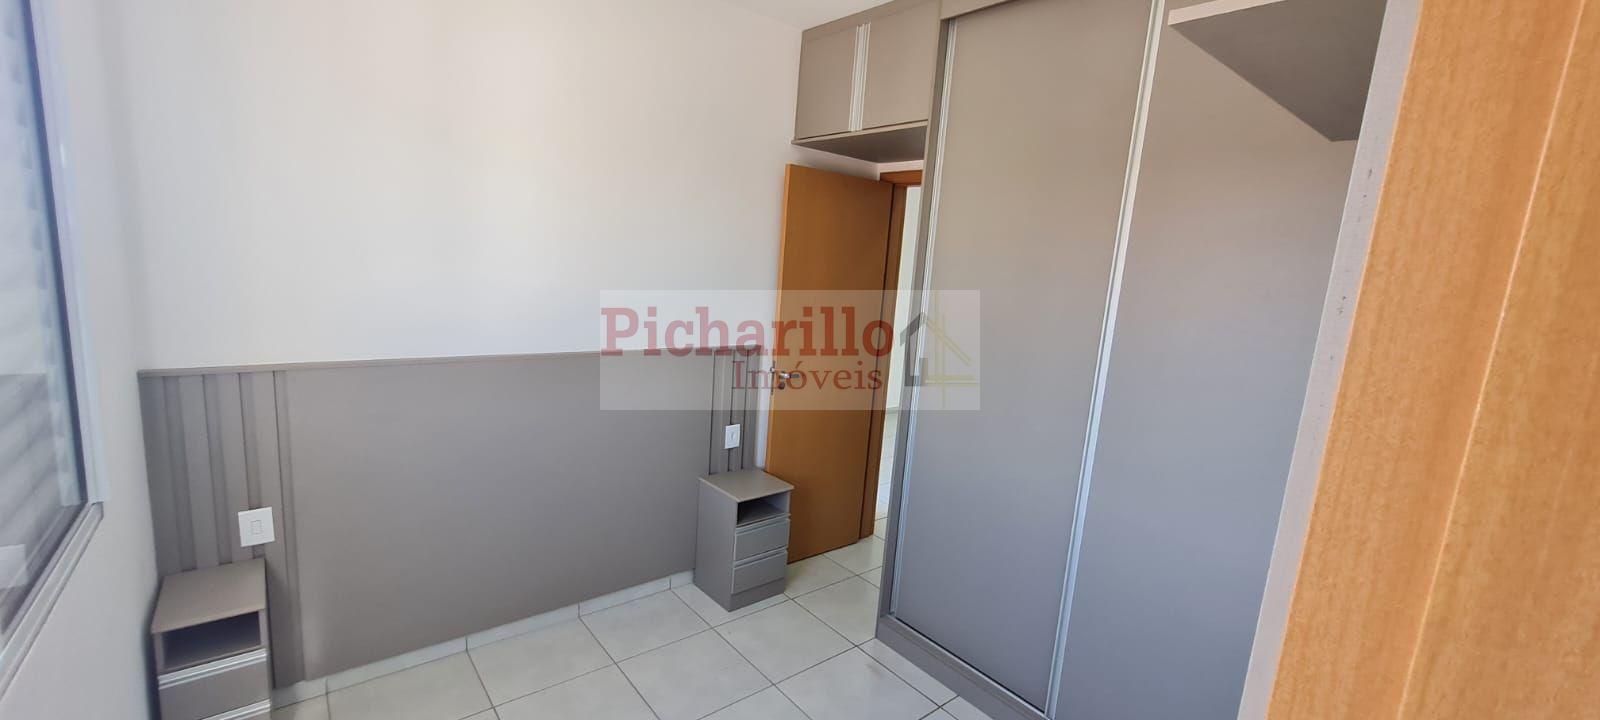 Apartamento com 2 dormitórios (1 suíte) à venda, 48 m² - Jardim Brasil - São Carlos/SP